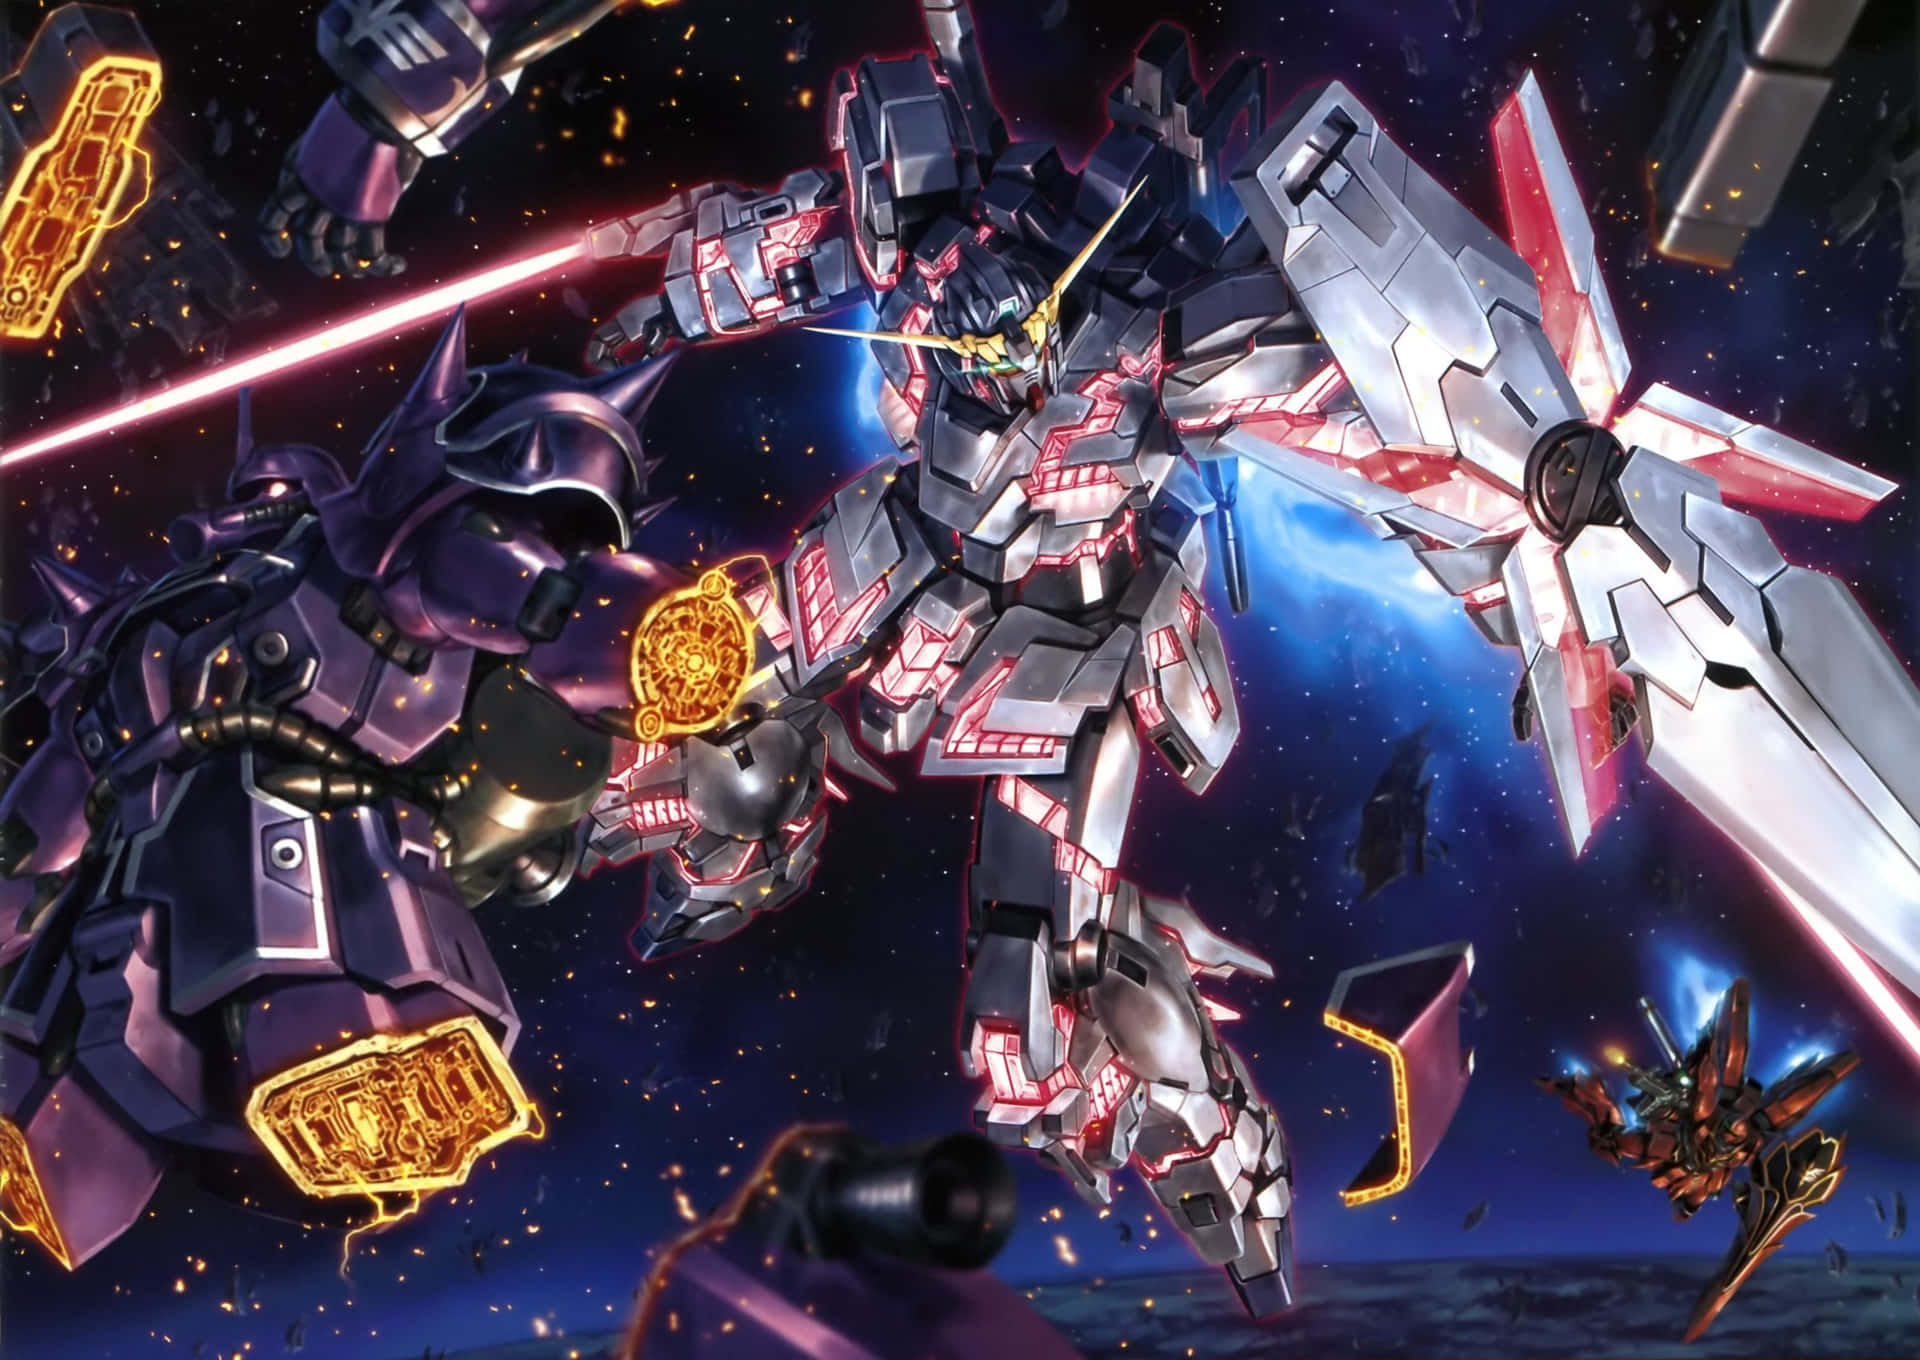 Ausgestattetmit Fortschrittlicher Technologie Und Einer Elite-crew Ist Der Gundam Bereit Zum Kampf!